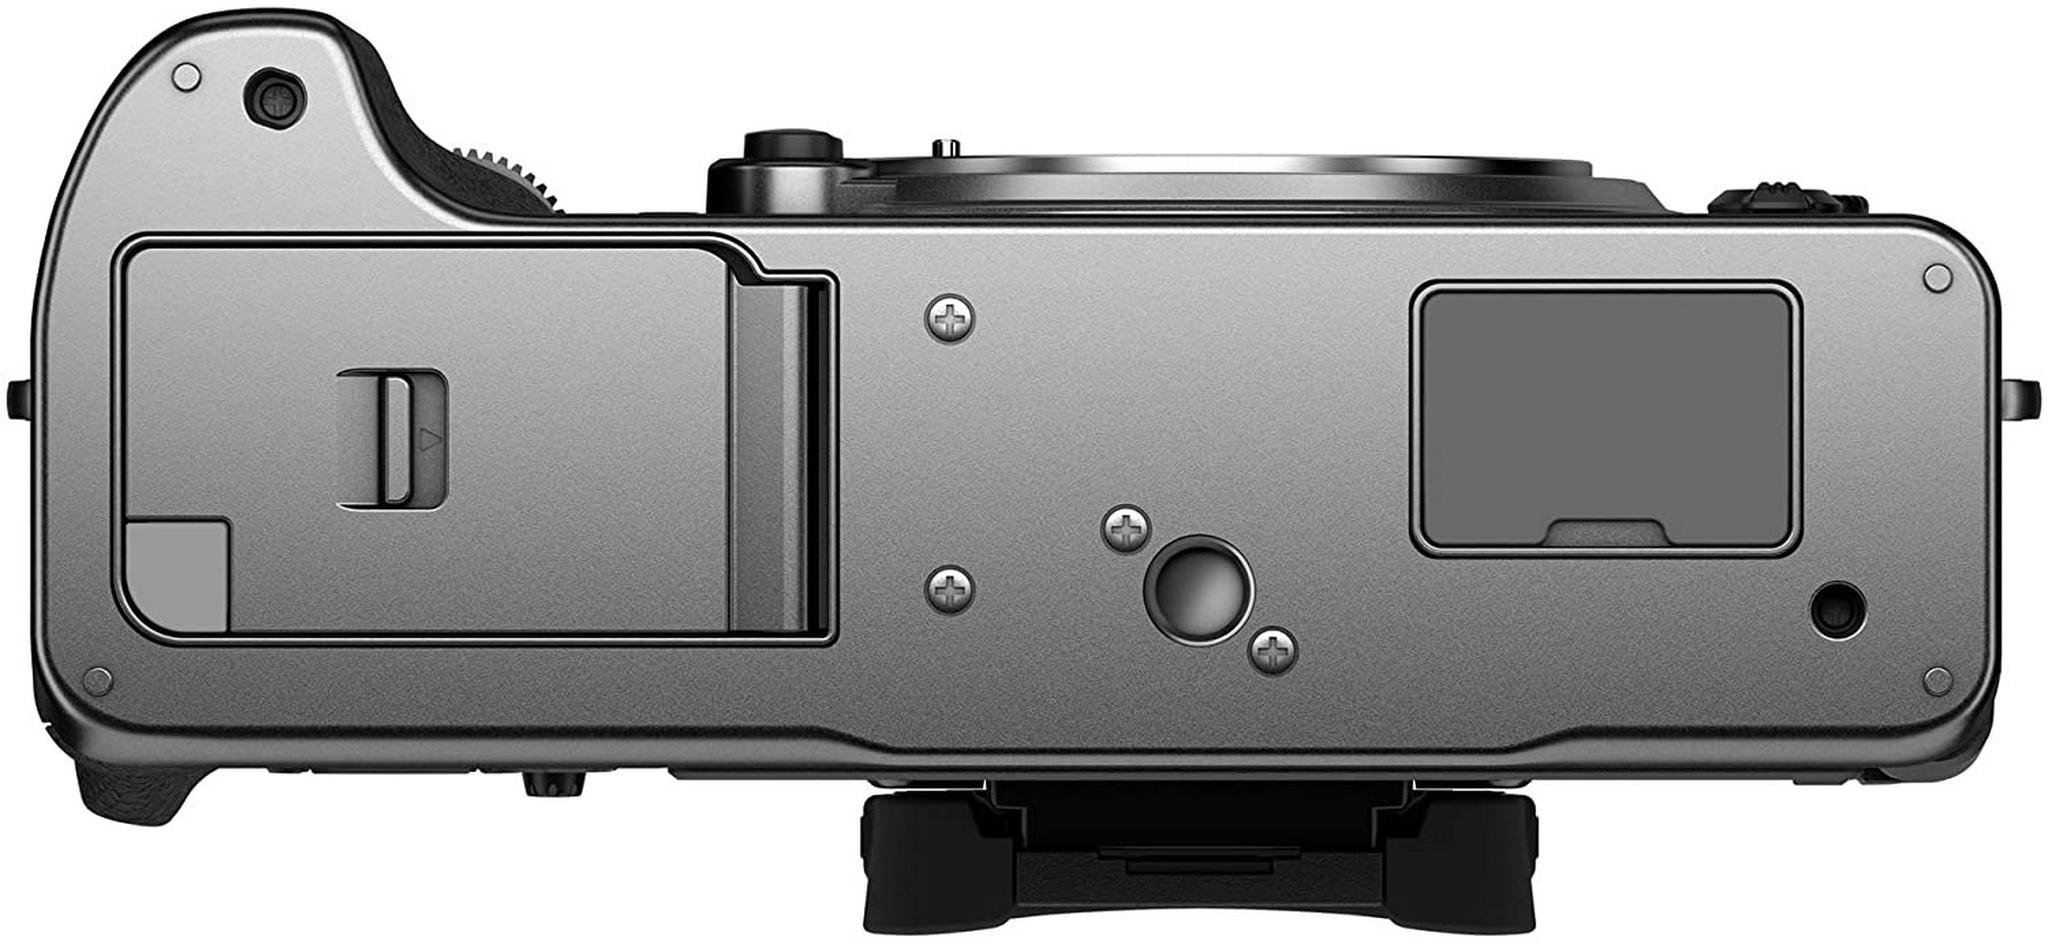 كاميرا فوجي فيلم الرقمية إكس – تي4 بدون مرآه (هيكل فقط) – فضي